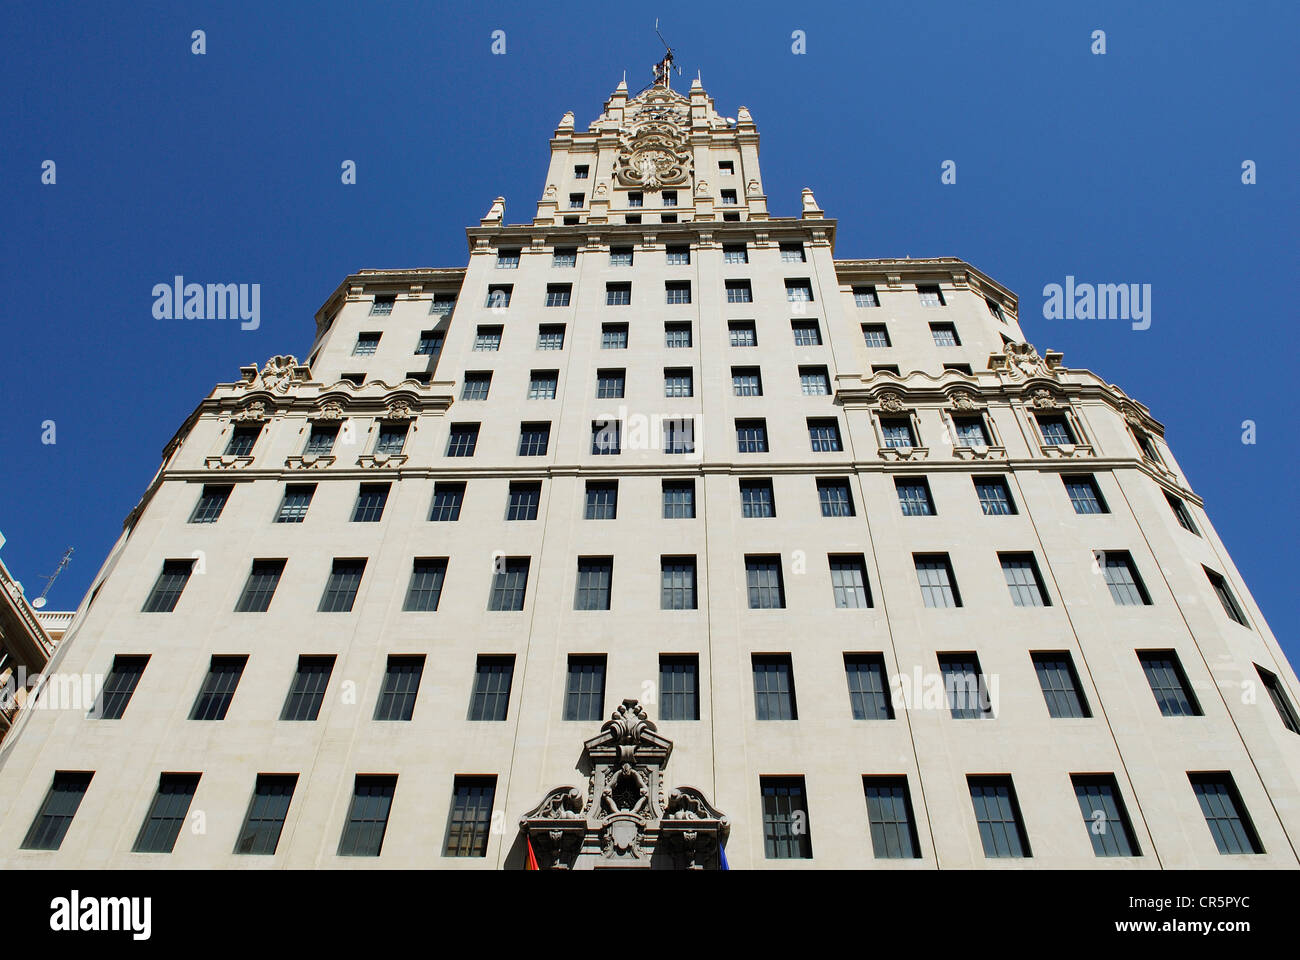 Espagne, Madrid, Telefonica, bâtiment à l'angle de la Gran Via et de la Calle de Fuencarral, premier gratte-ciel construit en 1929 Banque D'Images